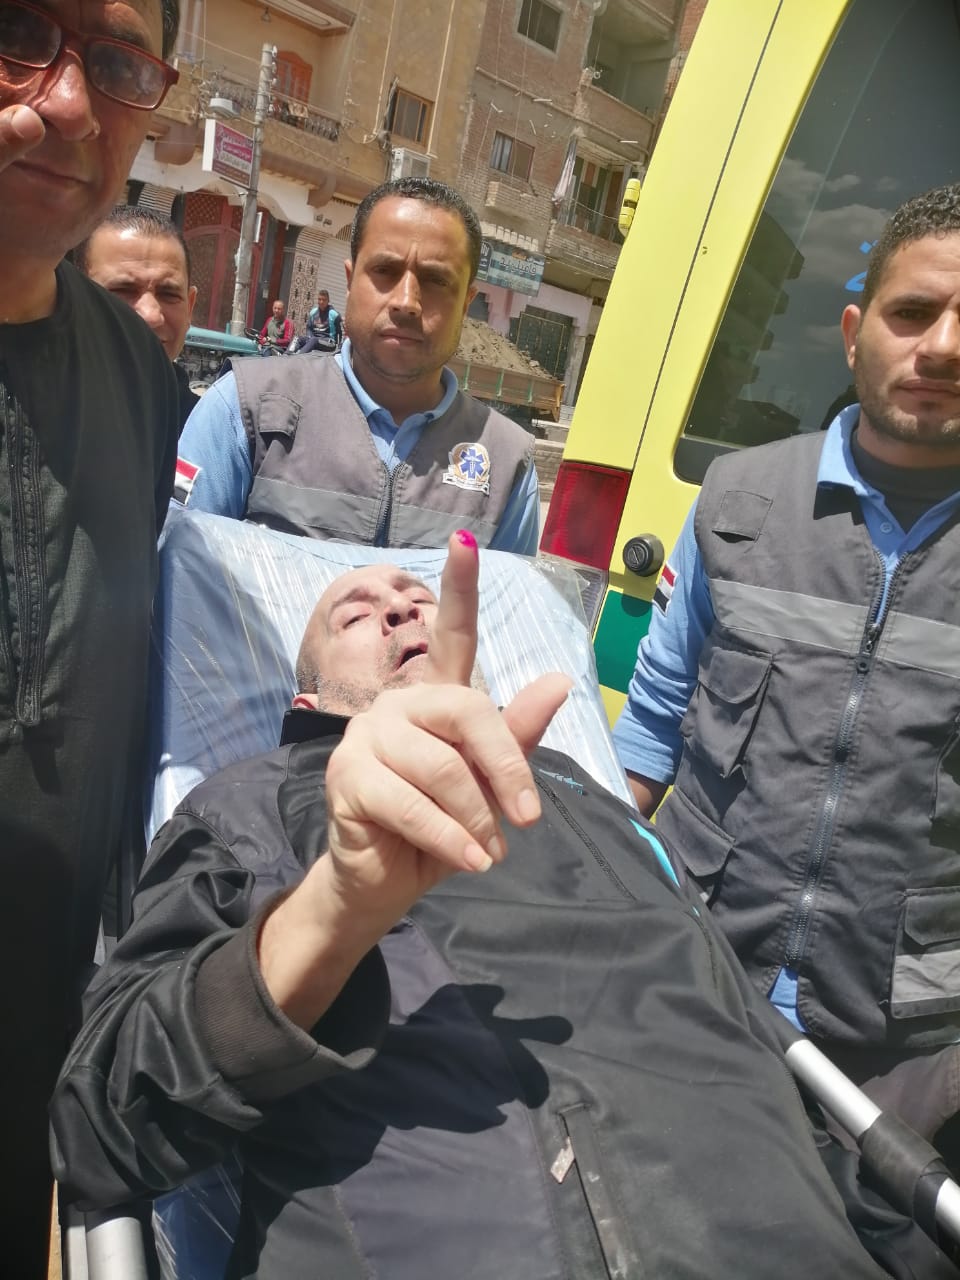  بالصور: مريض بالشلل يشارك في الاستفتاء من داخل سيارة إسعاف بكفر الشيخ 